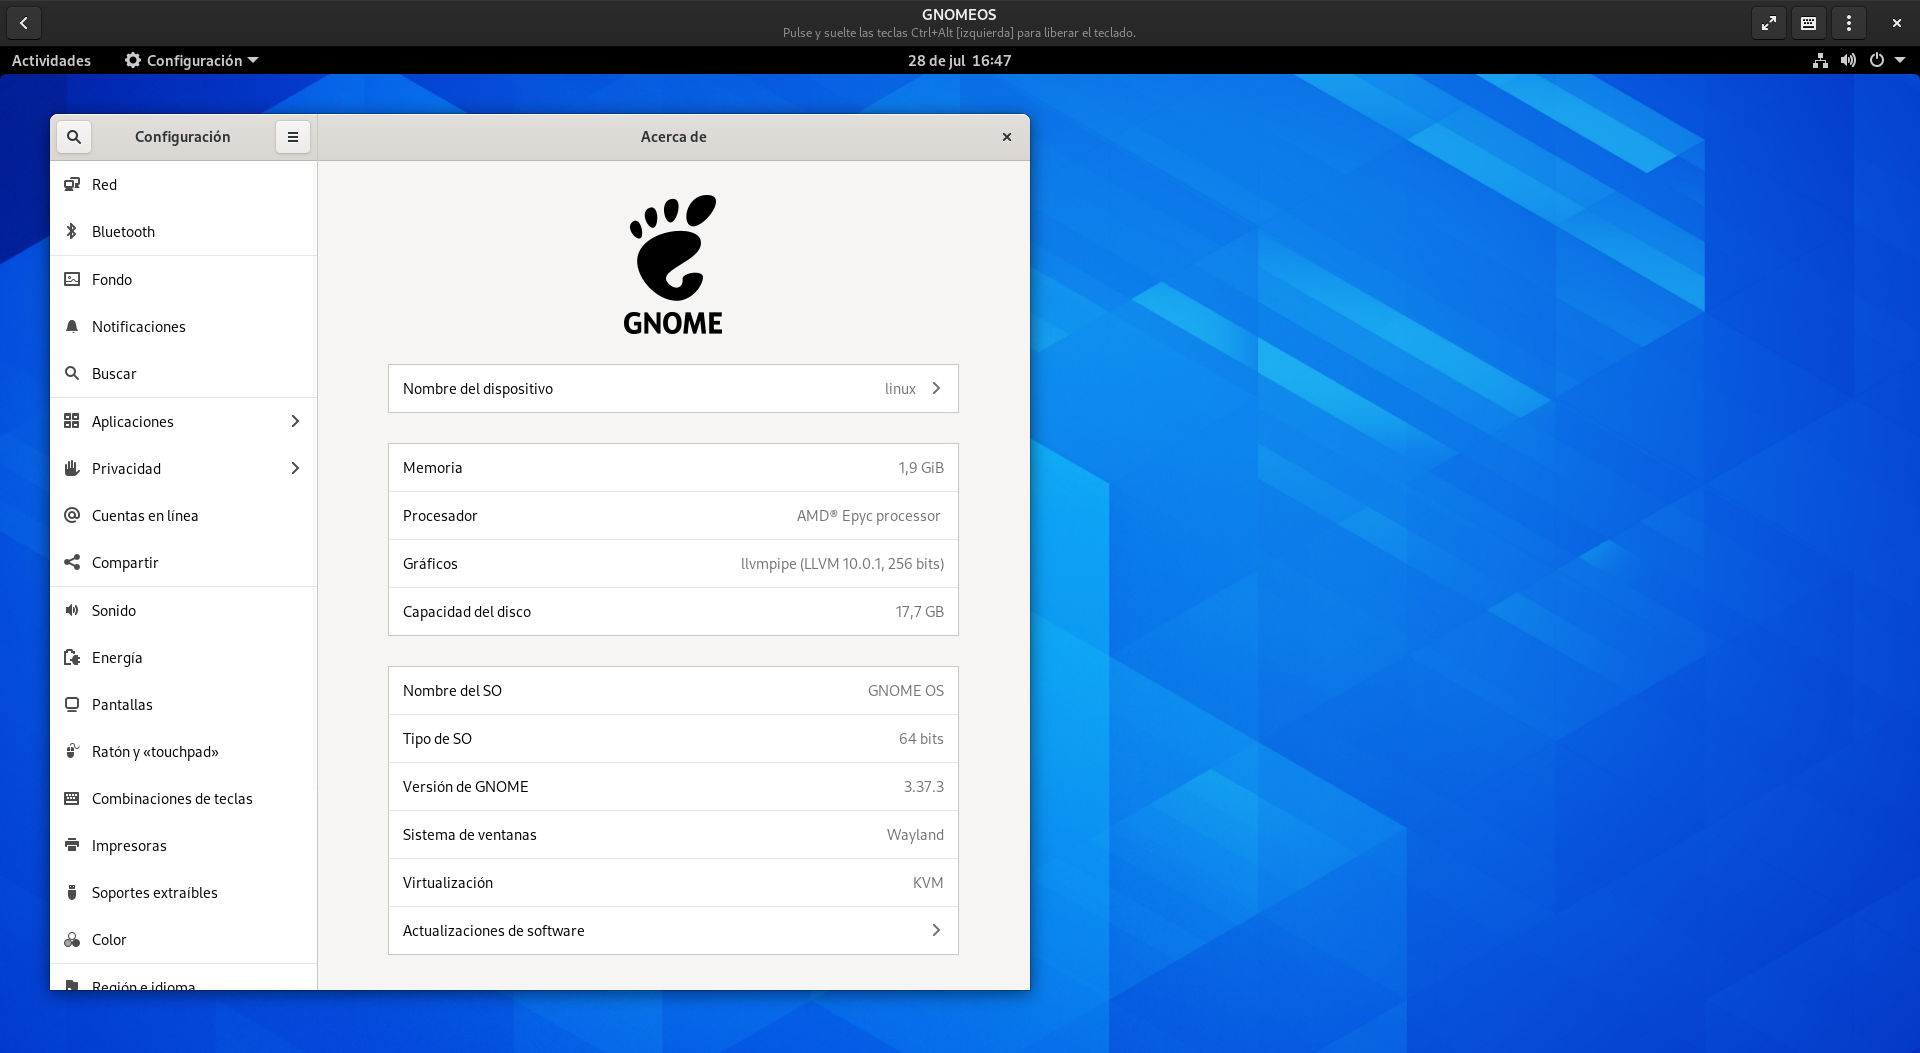 GNOME OS ejecutado en Boxes